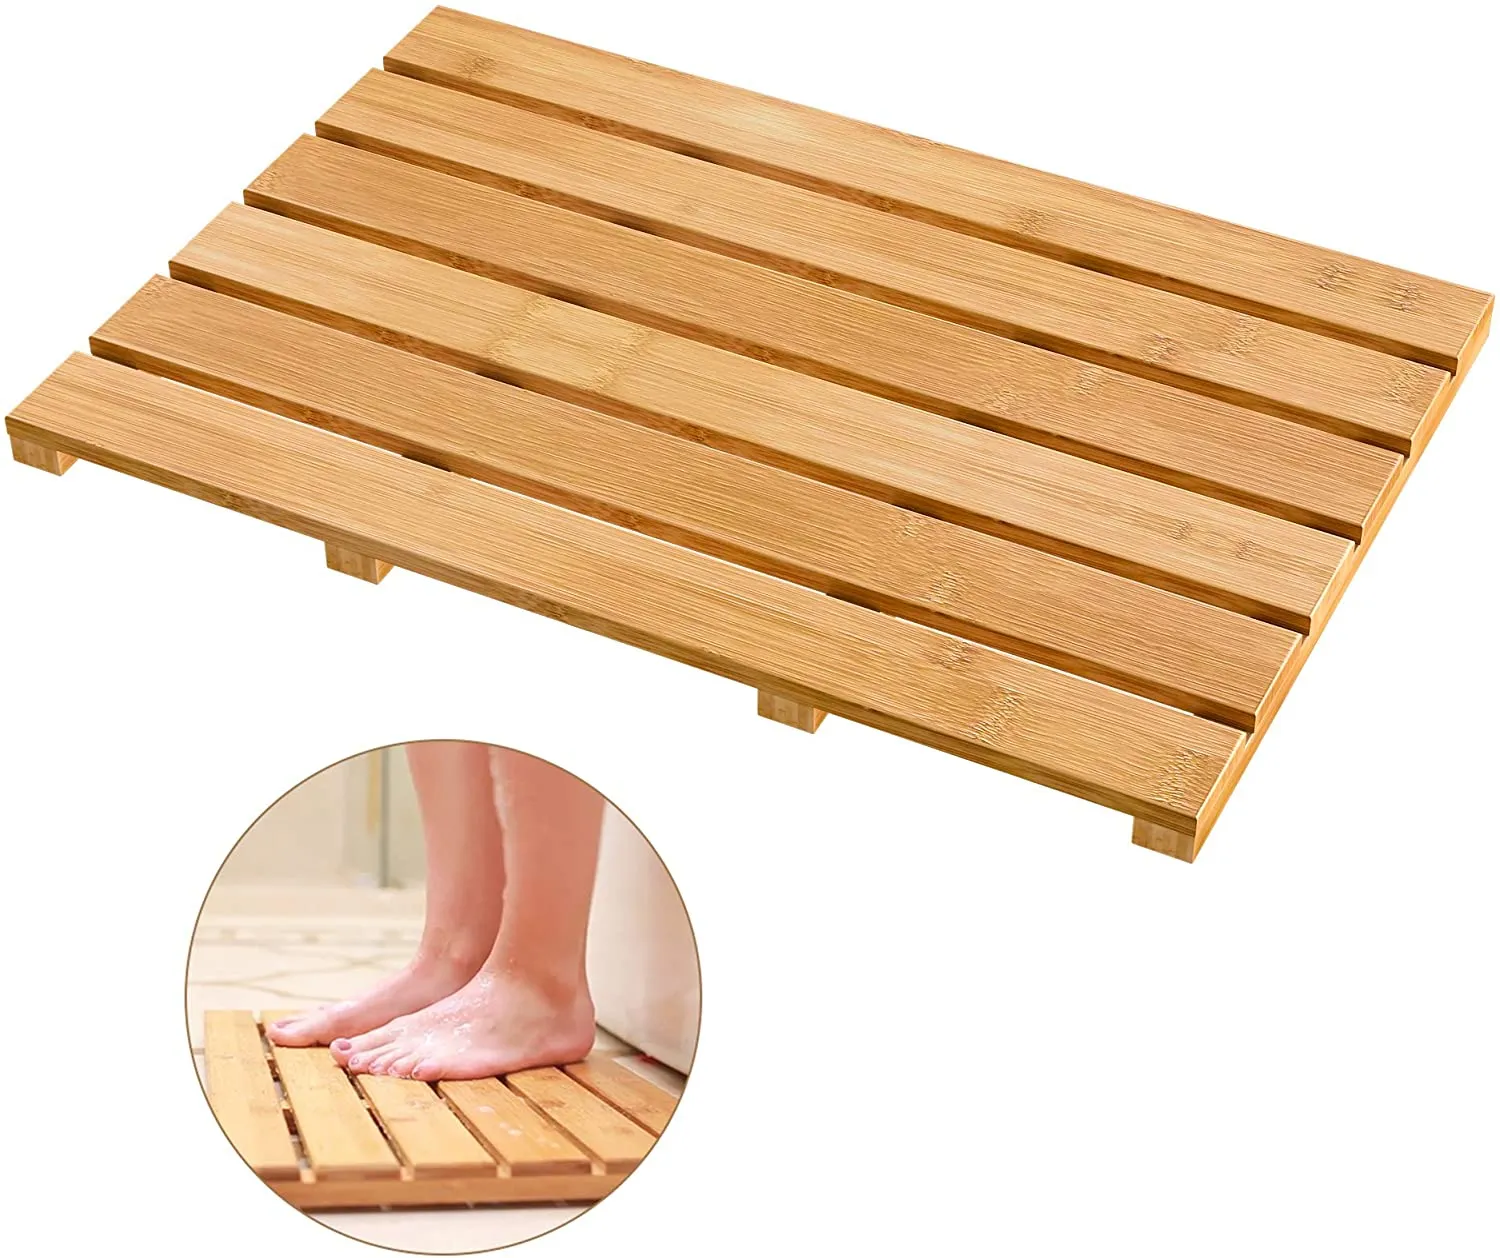 Alfombrillas de bambú antideslizantes para baño, alfombra resistente al agua de lujo para ducha, uso interior o exterior